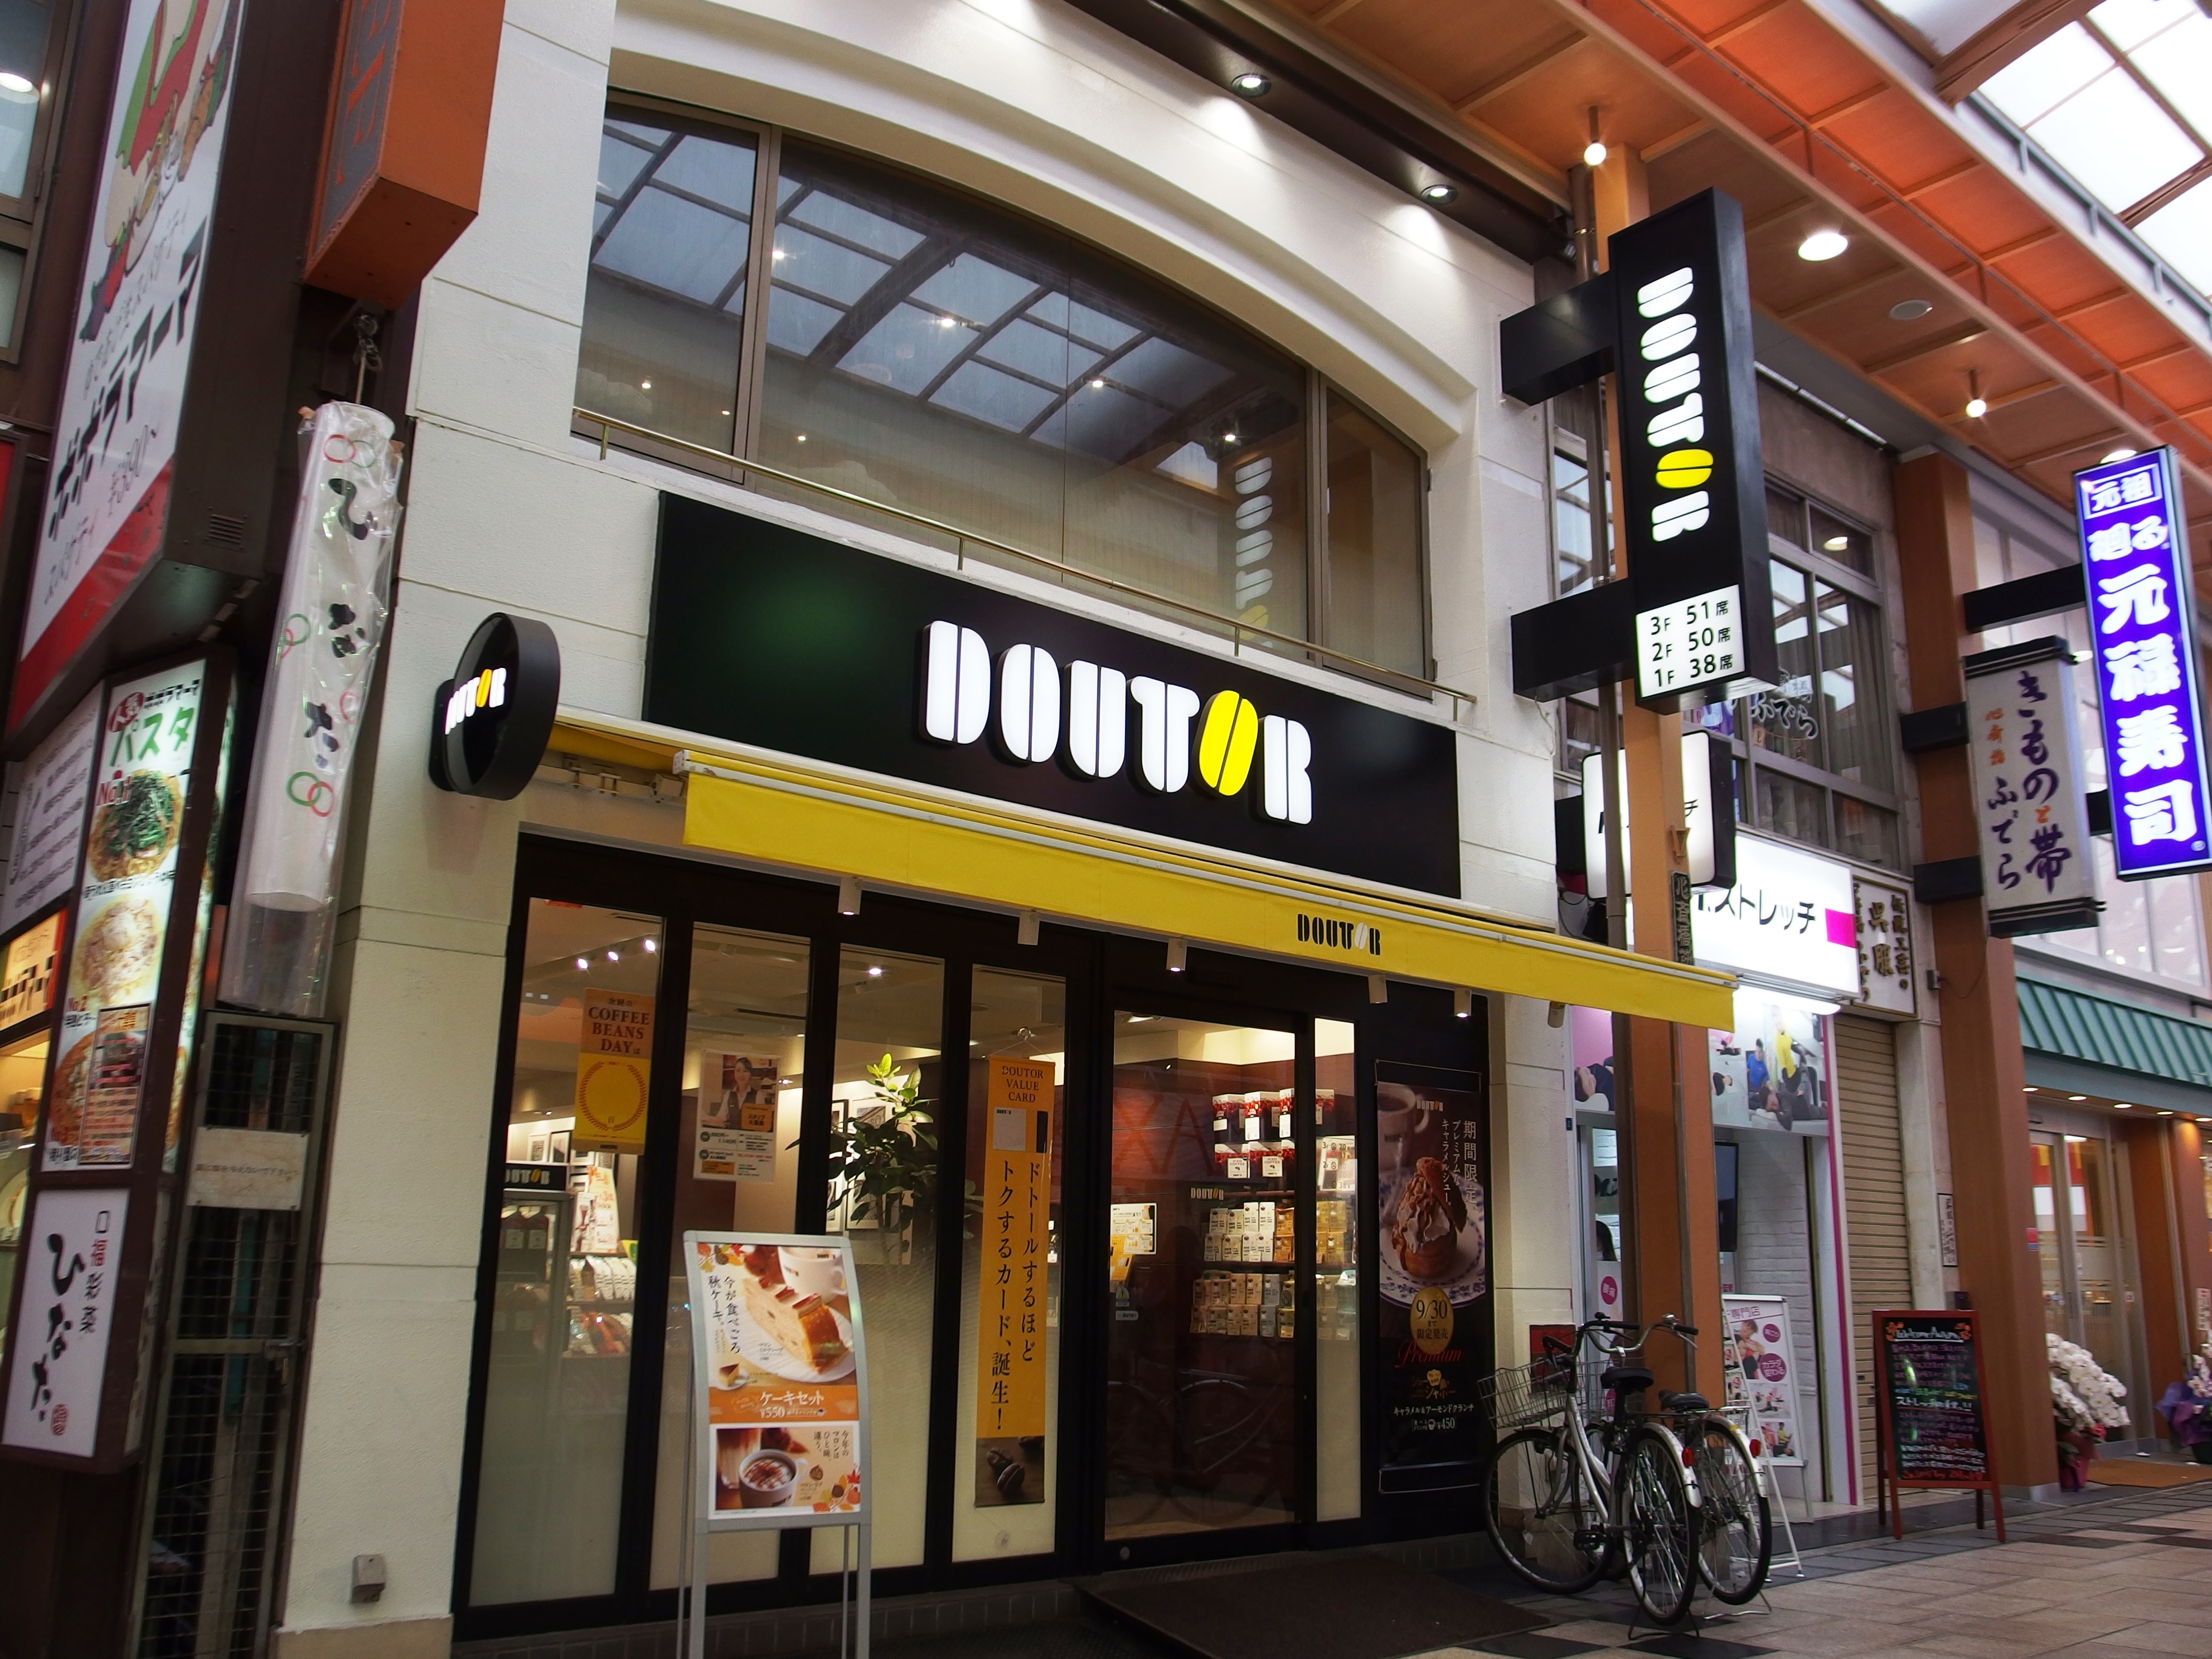 日本で最初に喫茶店1000店を達成したドトール 創業者 鳥羽博道氏の 狂気 を思い出す Fdn フードリンクニュース